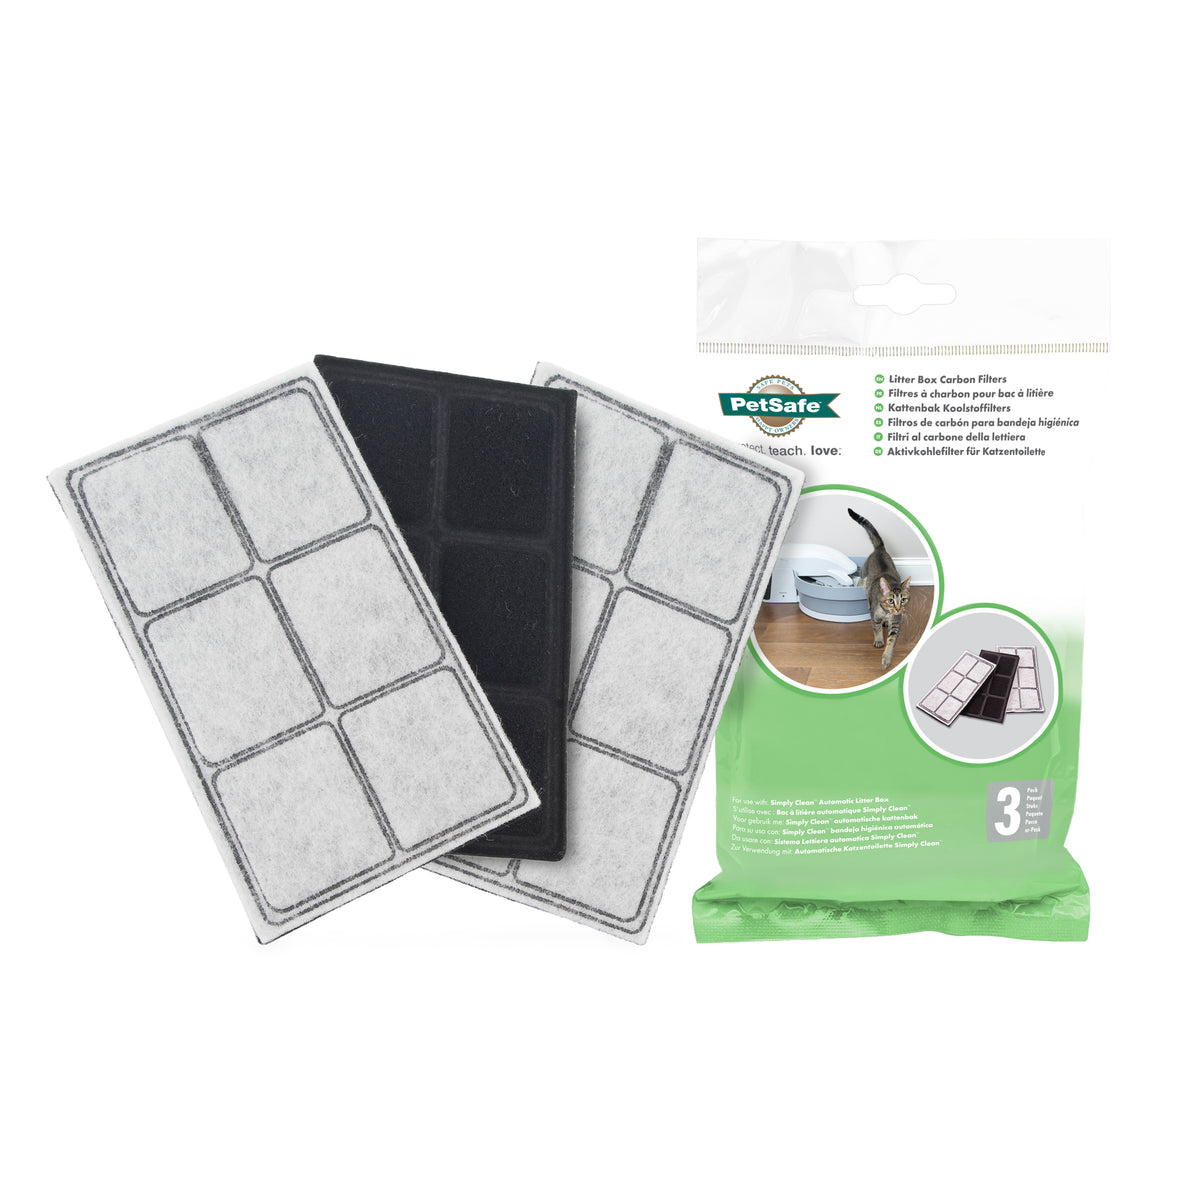 PetSafe Litter Box Carbon Filters - 3 Pack